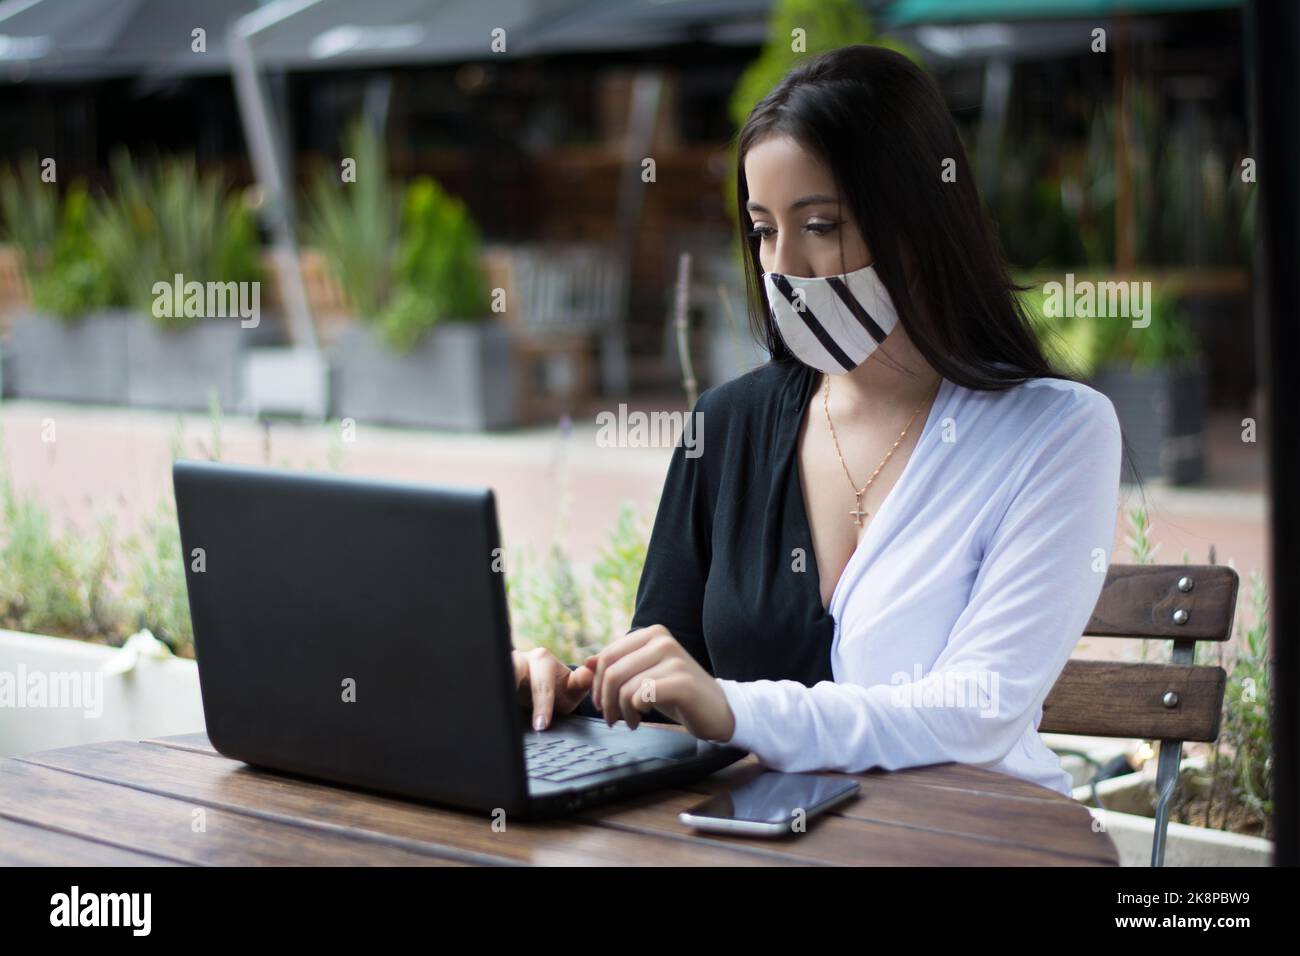 Une femme portant un masque, travaillant sur son ordinateur portable avec une expression sérieuse dans un café Banque D'Images